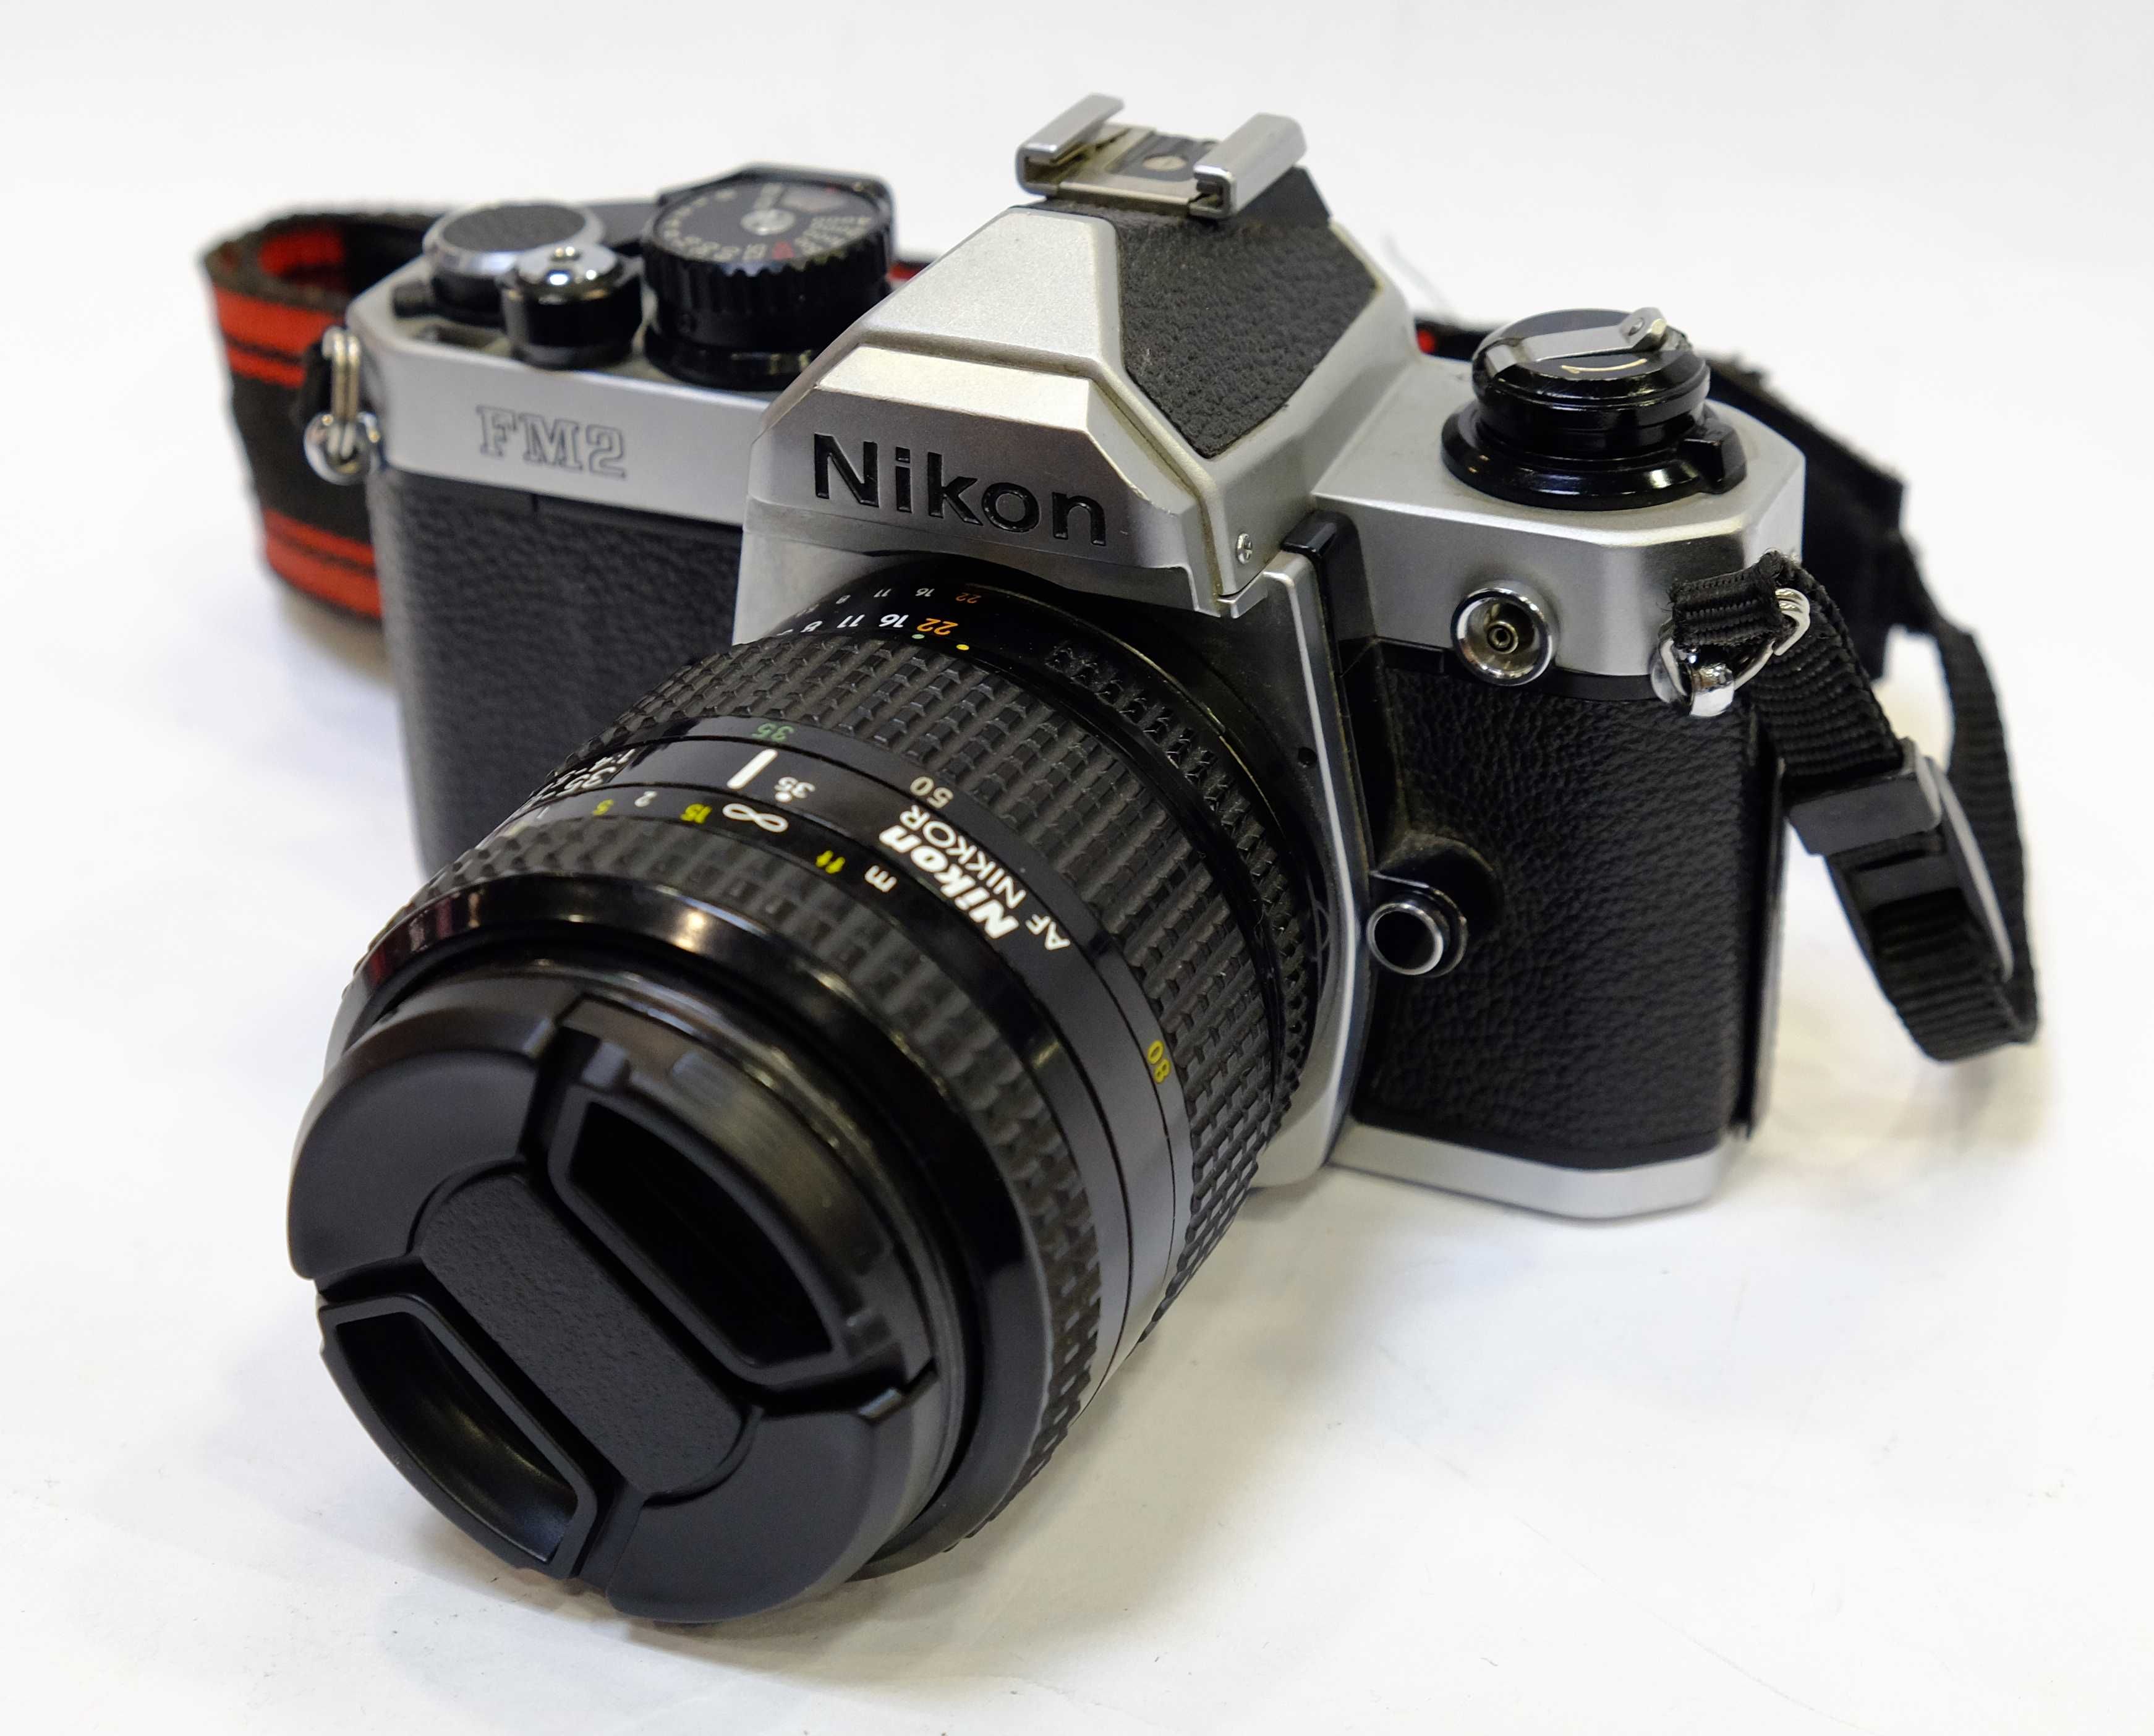 Aparat analogowy Nikon FM2N + 35-80 F/4-4.6 D. Gwarancja!